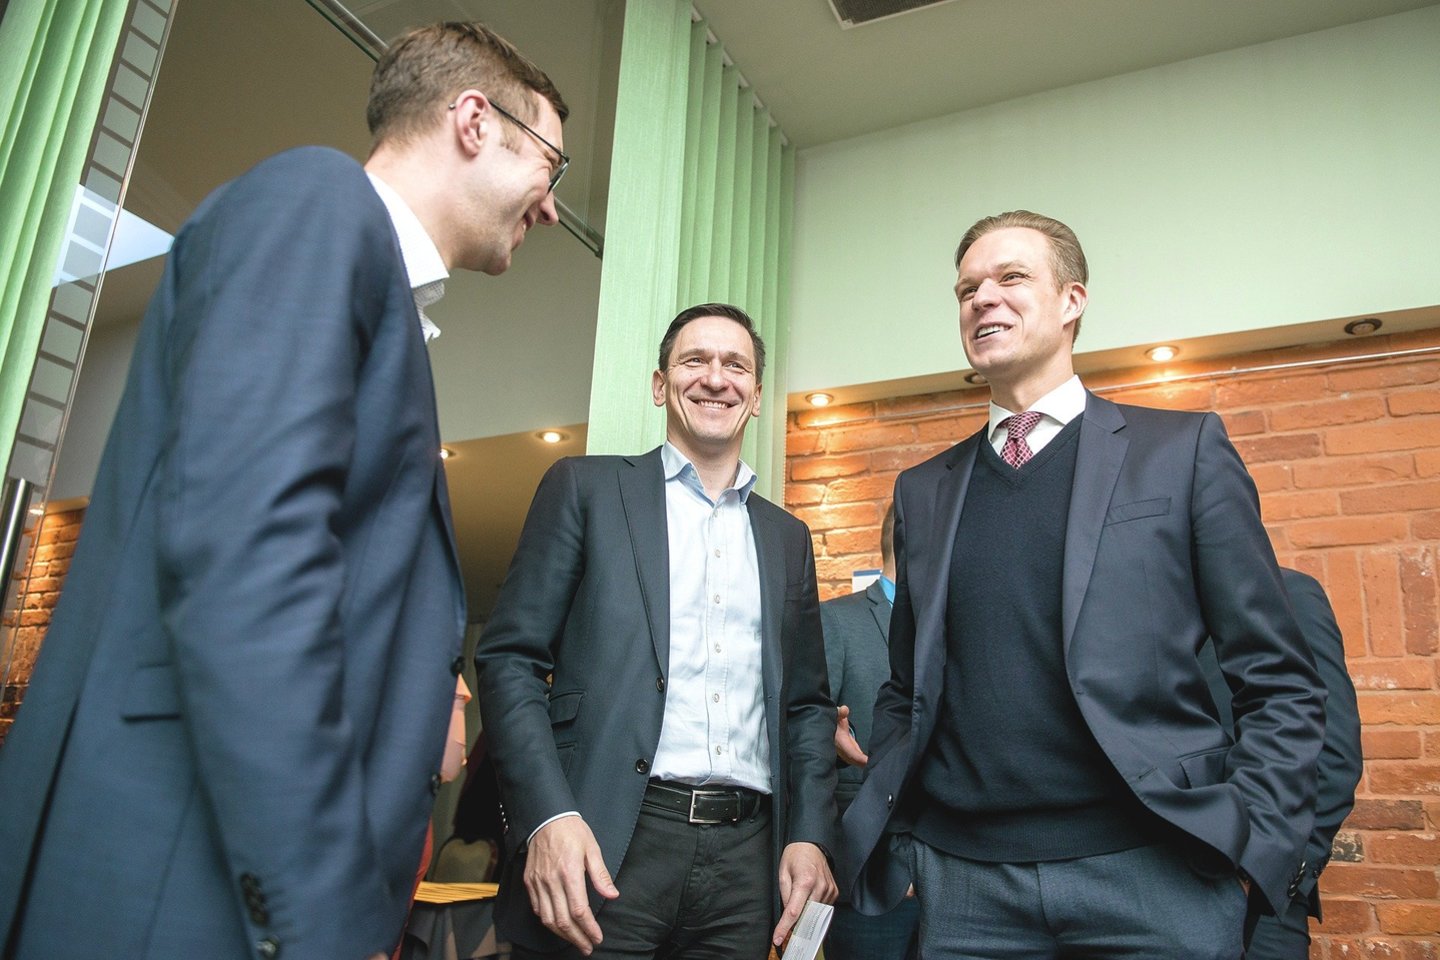 Turtingiausi tarp ministrų – konservatoriai G.Landsbergis (dešinėje) ir D.Kreivys.